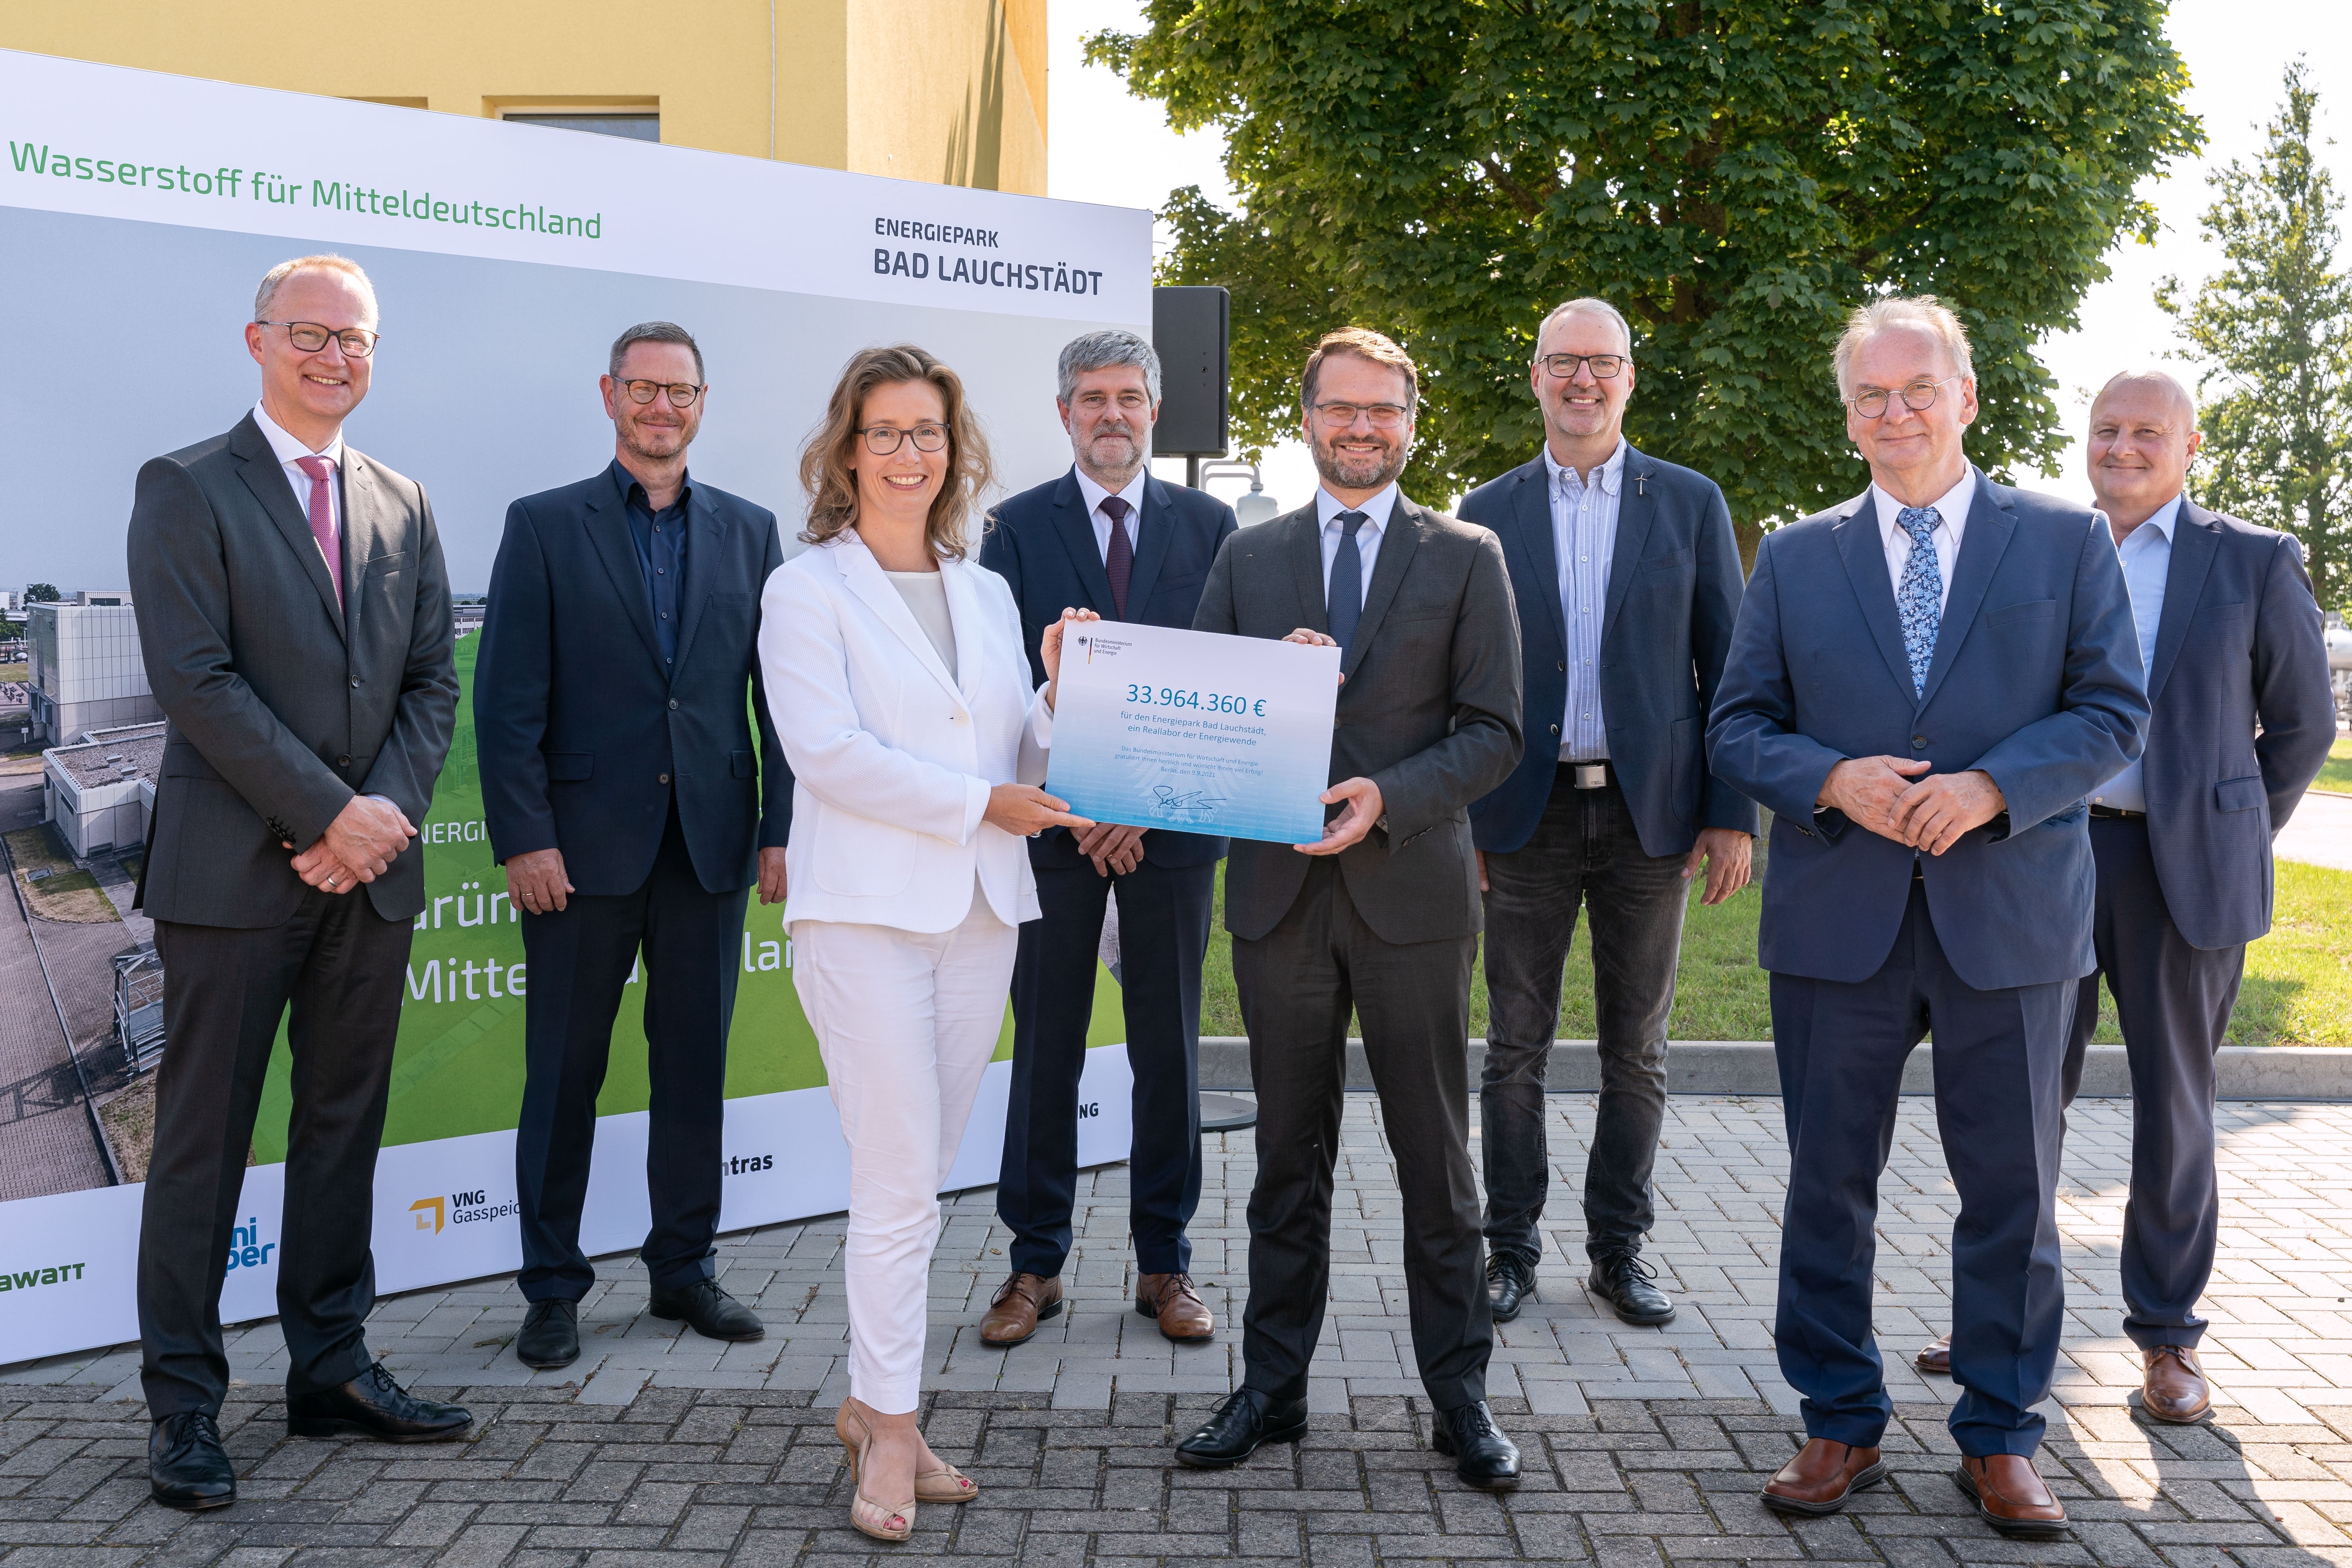 Energiepark Bad Lauchstädt macht mitteldeutsche Chemieindustrie nachhaltiger